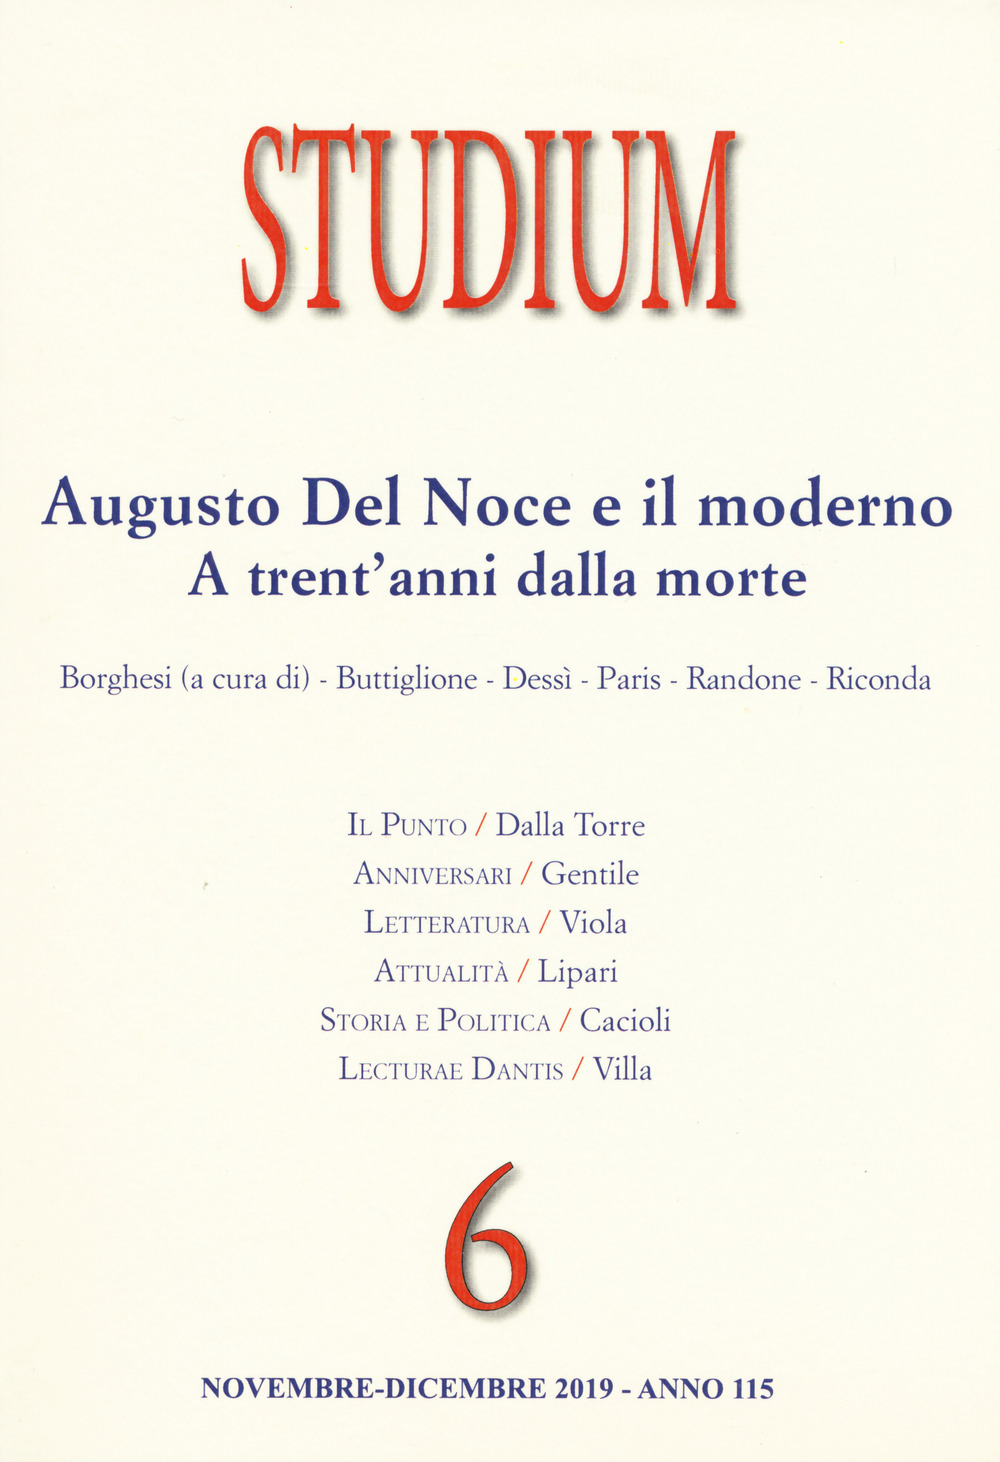 Studium (2019). Vol. 6: Augusto del Noce e il moderno. A trent'anni dalla morte